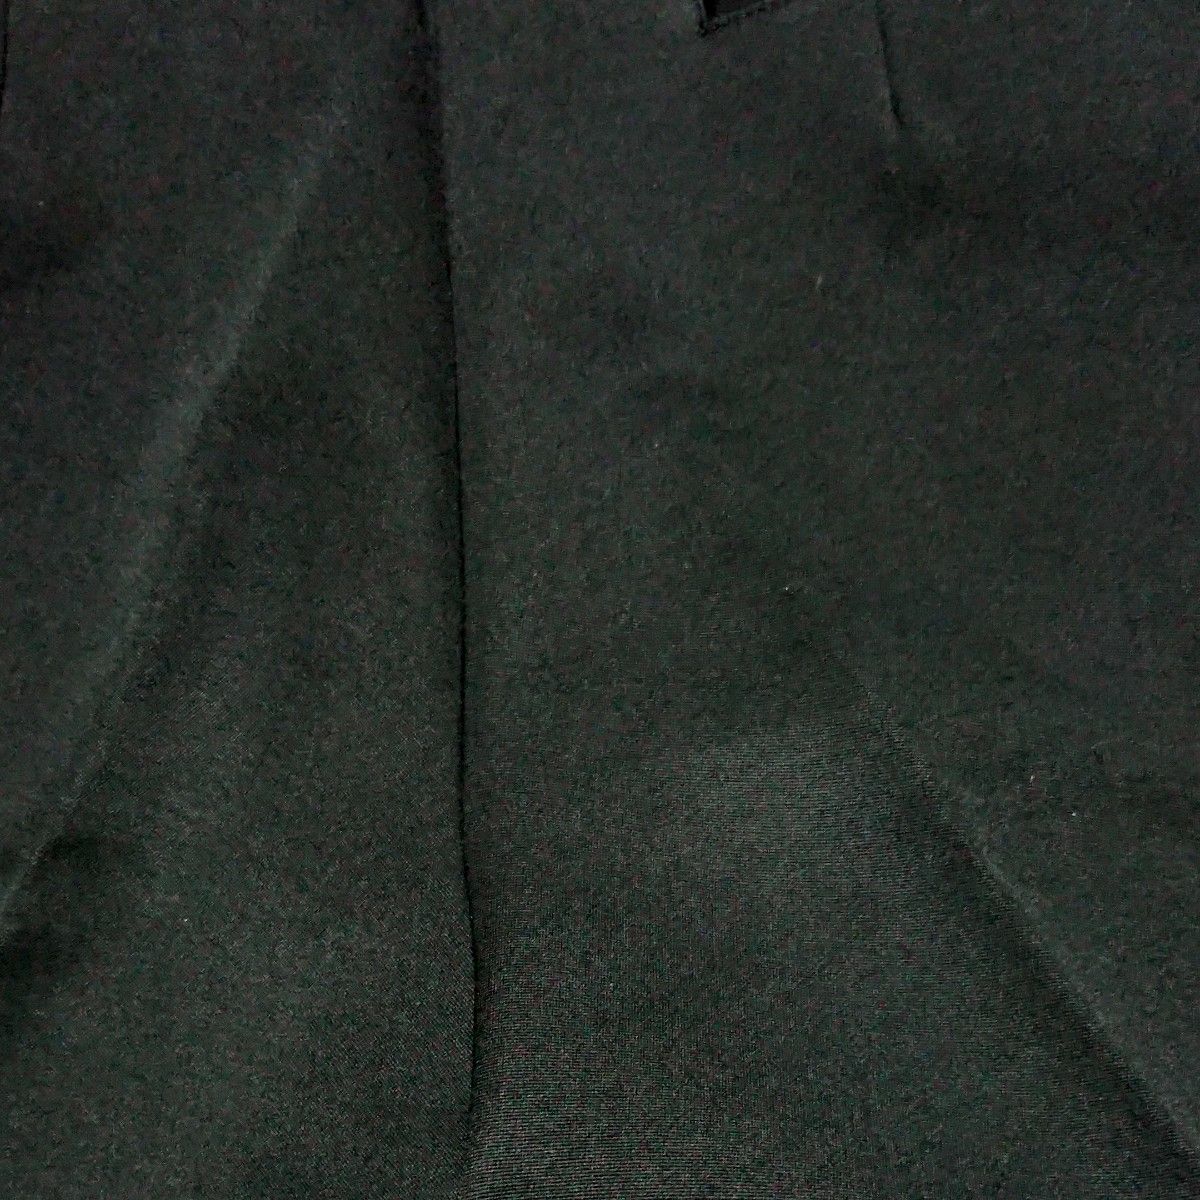 黒パンツ 黒いズボンスラックス裾ダブル W70 細身 美品 クーポン